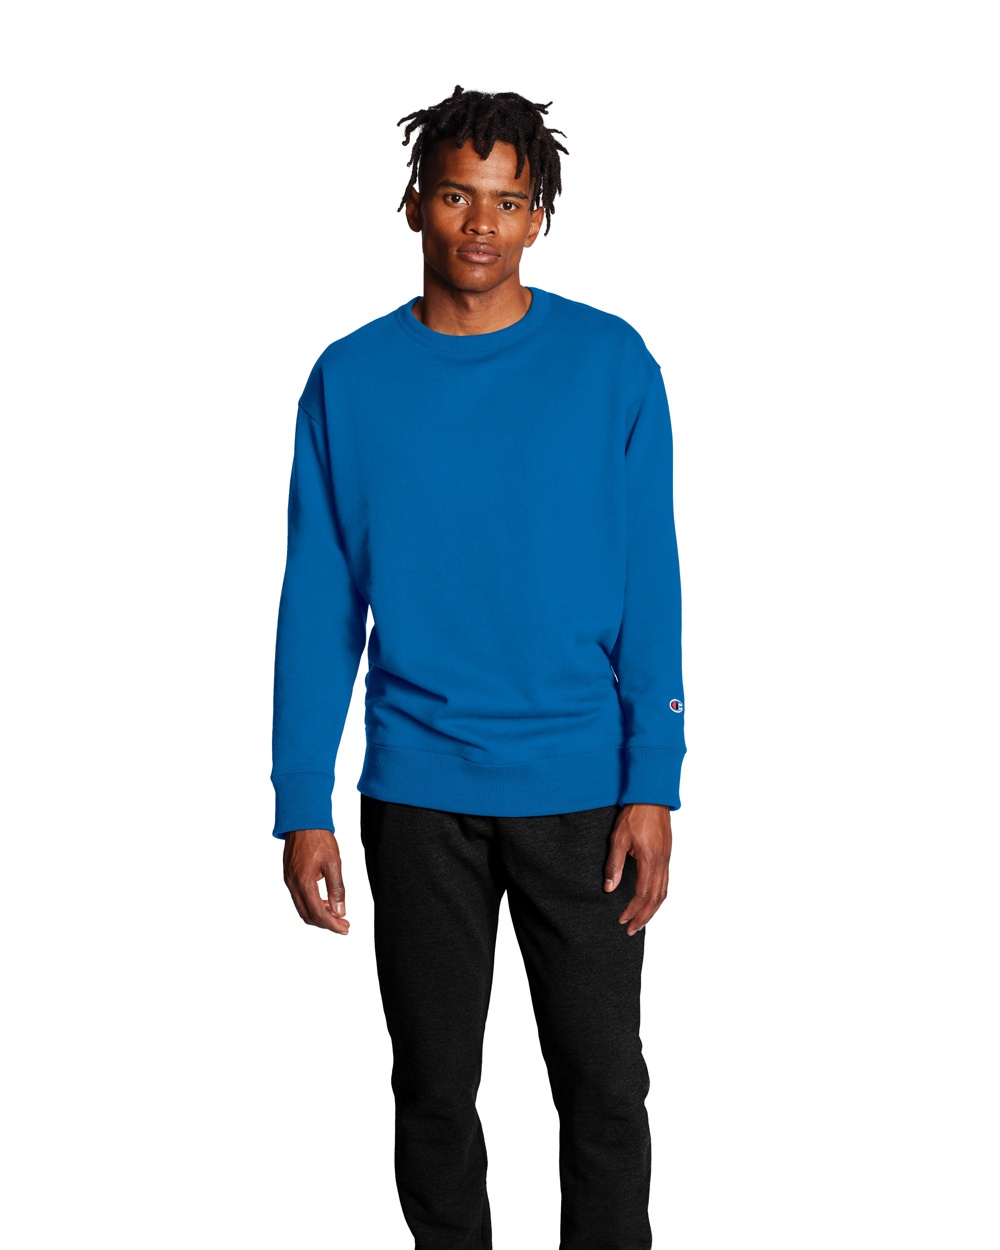 S600 Crewneck Sweatshirt - Wholesale Apparel